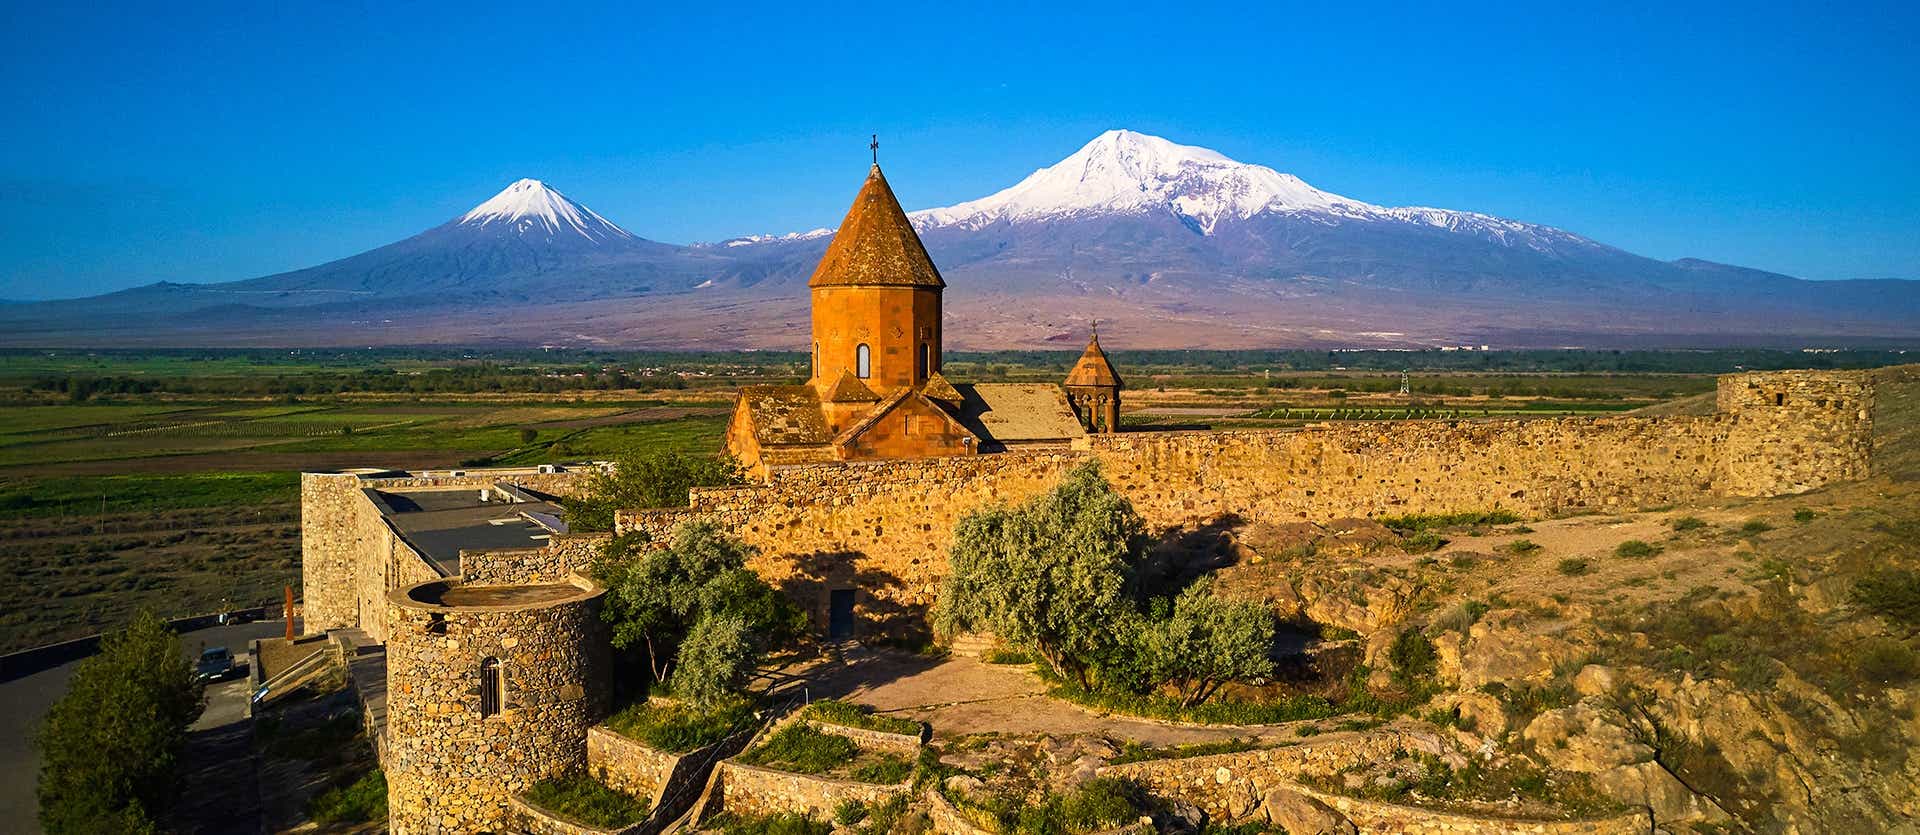 Monasterio Khor Virap <span class="iconos separador"></span> Armenia